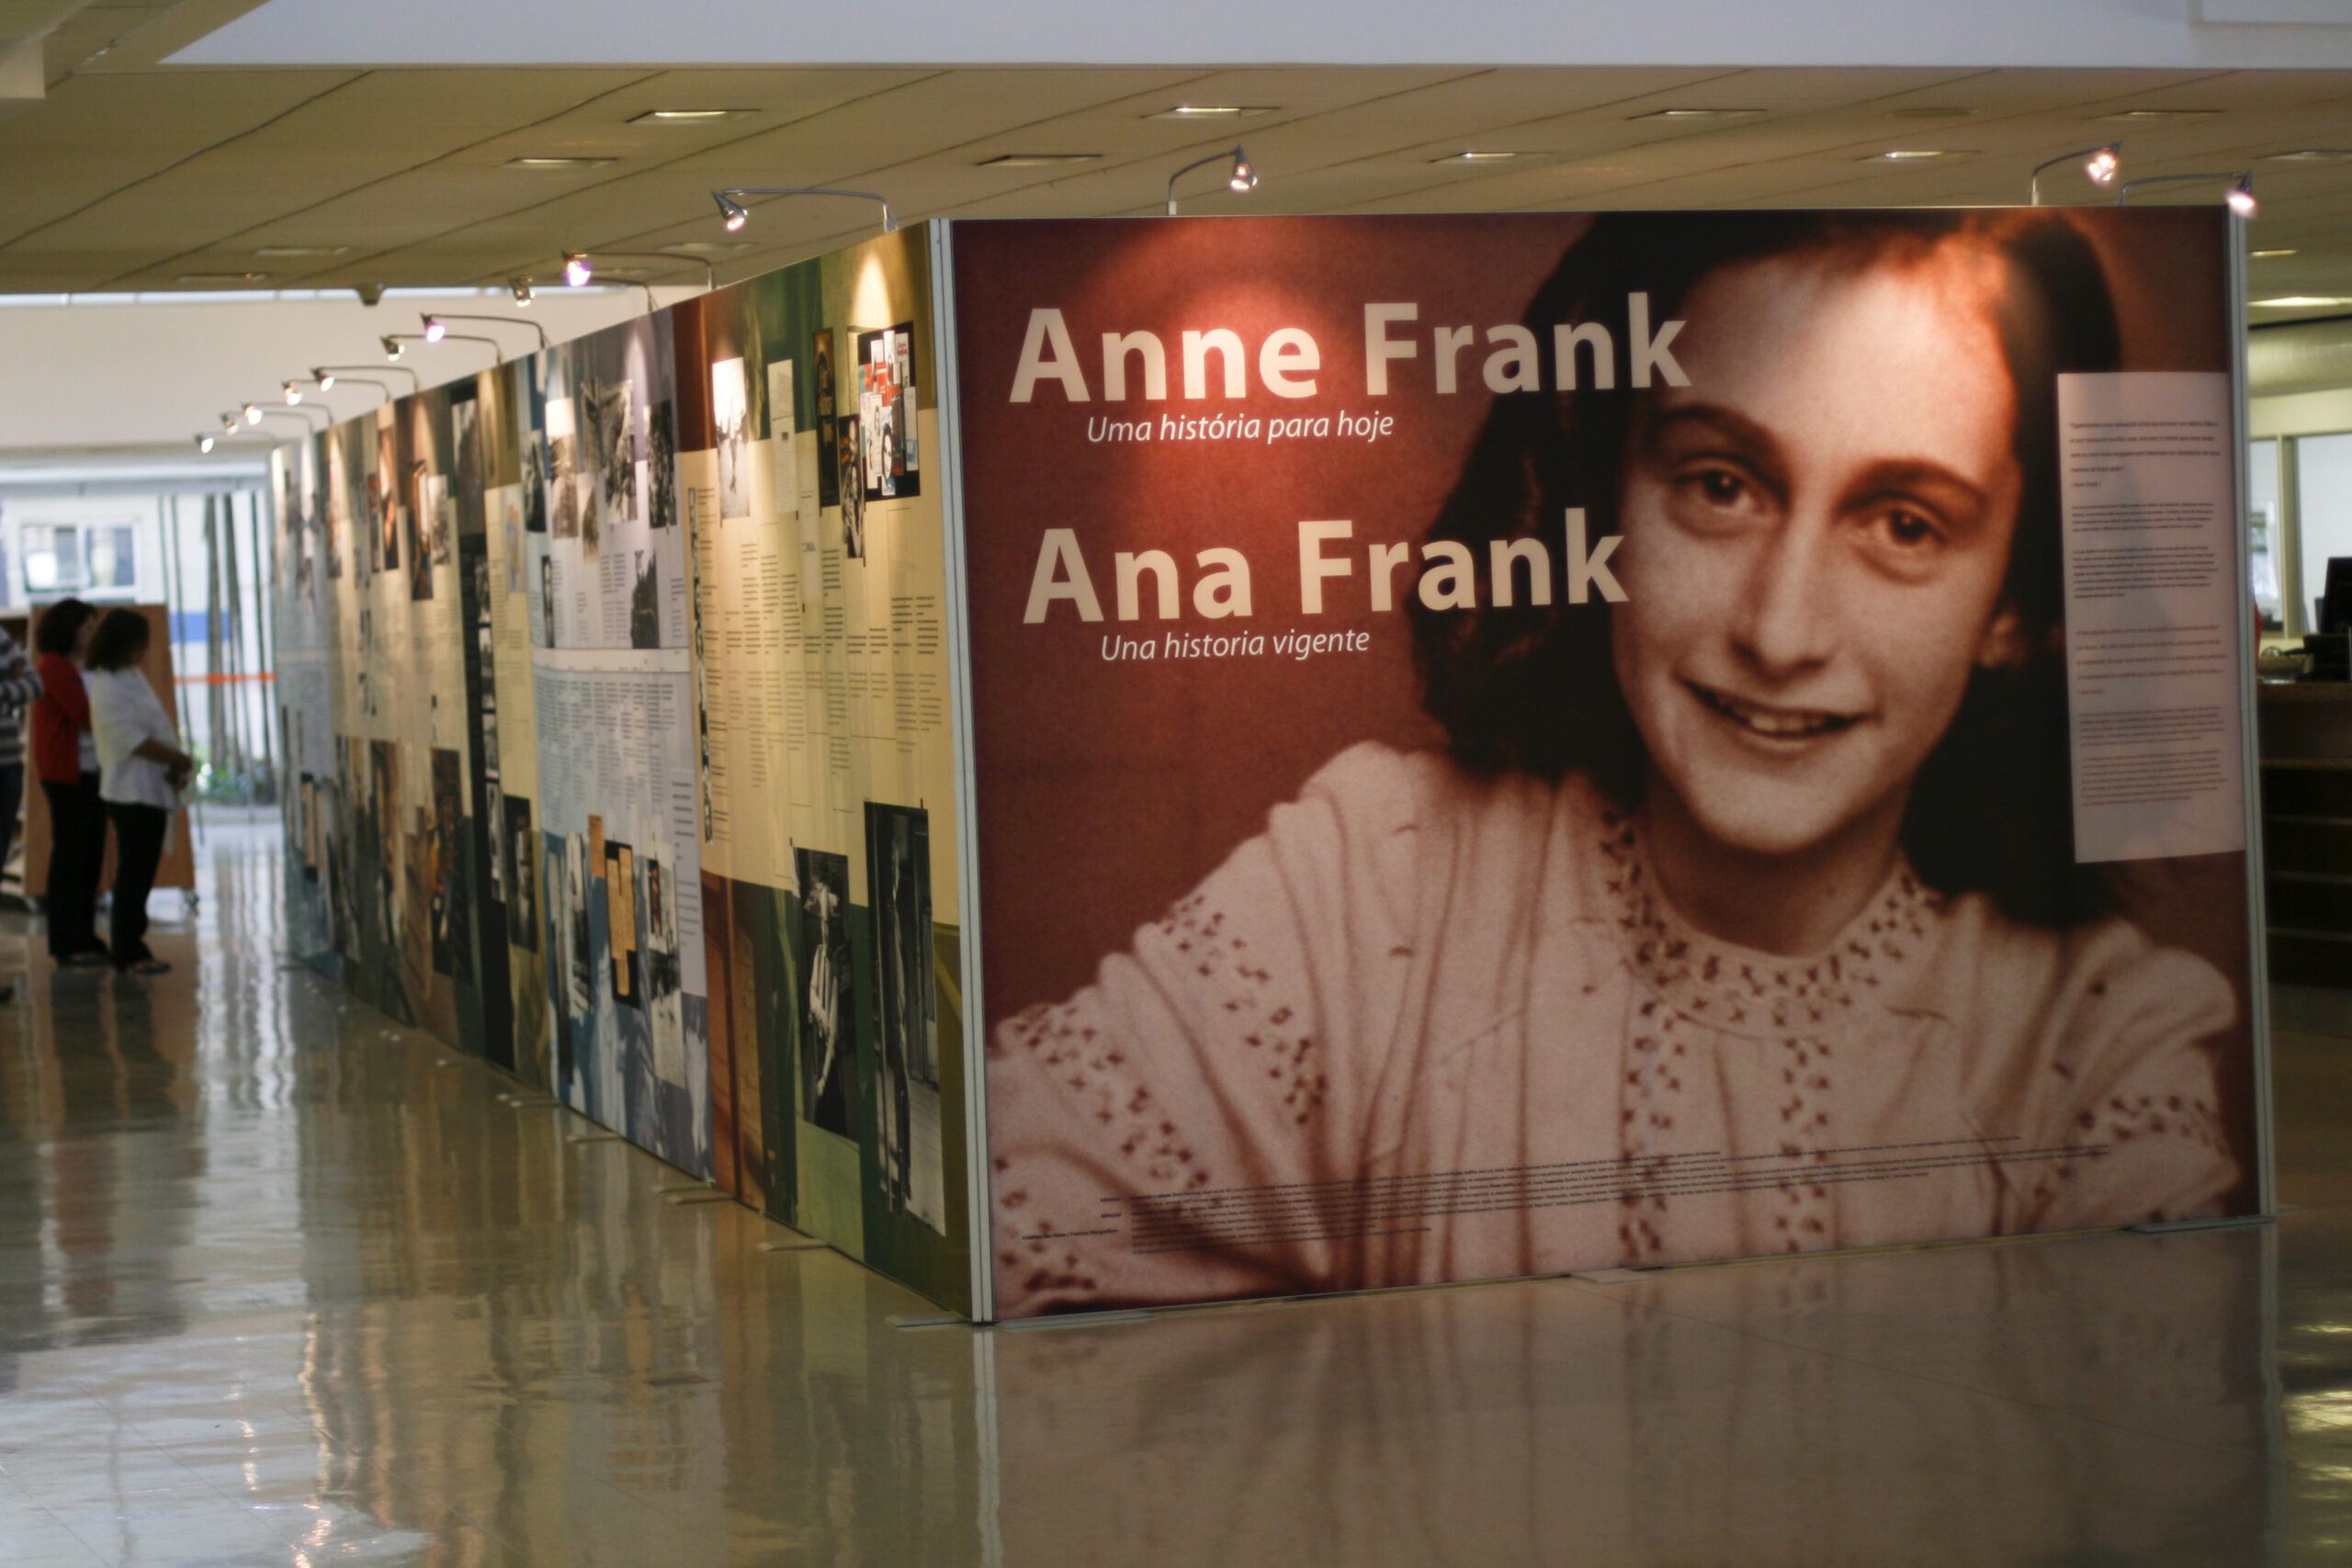  Plataforma baseada na história de Anne Frank vai oferecer conteúdo educacional gratuito